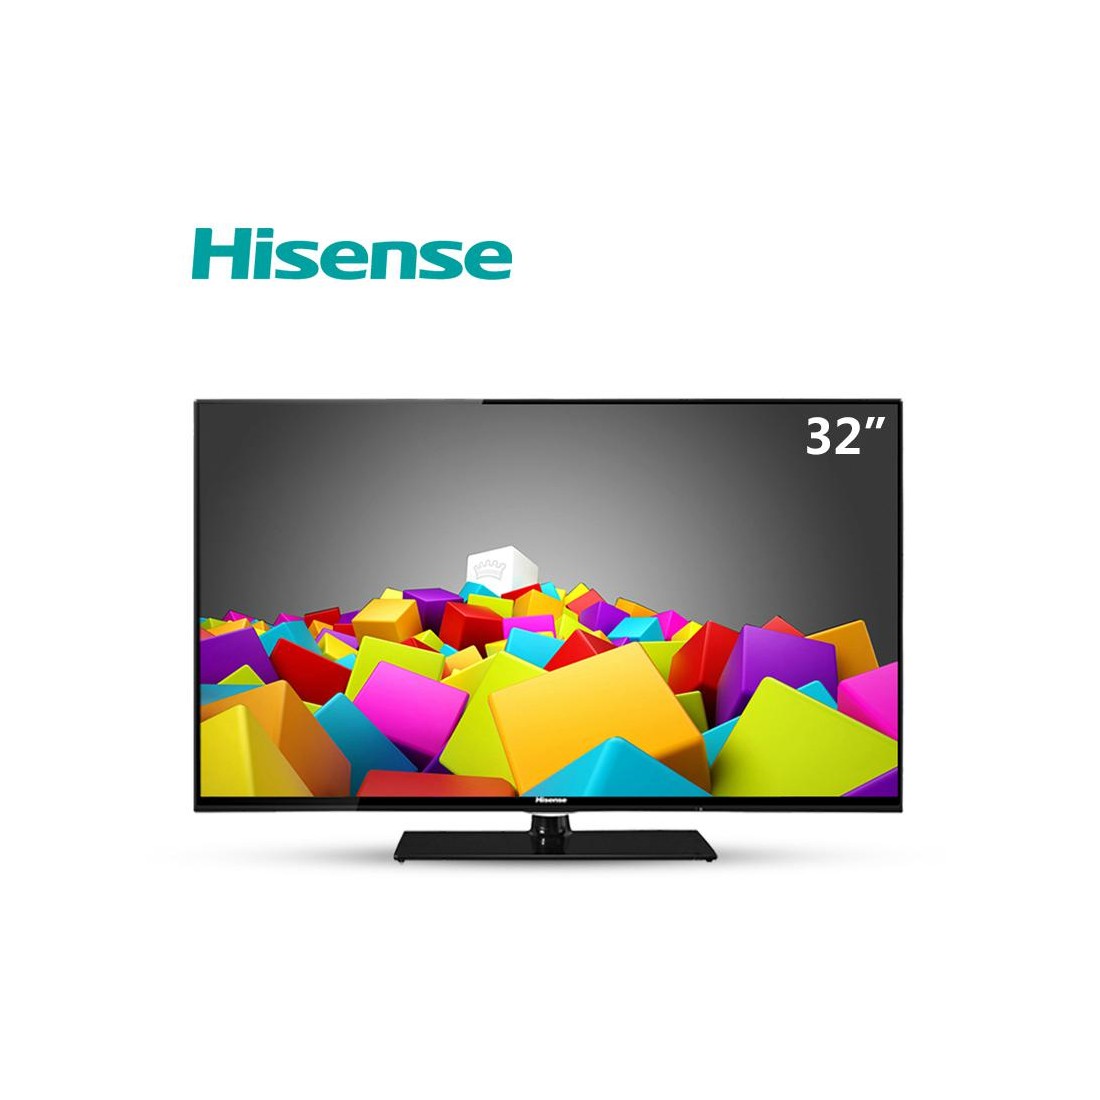 Análisis] Hisense H32B5600, un modesto Smart TV de 32'' a precio de  oportunidad